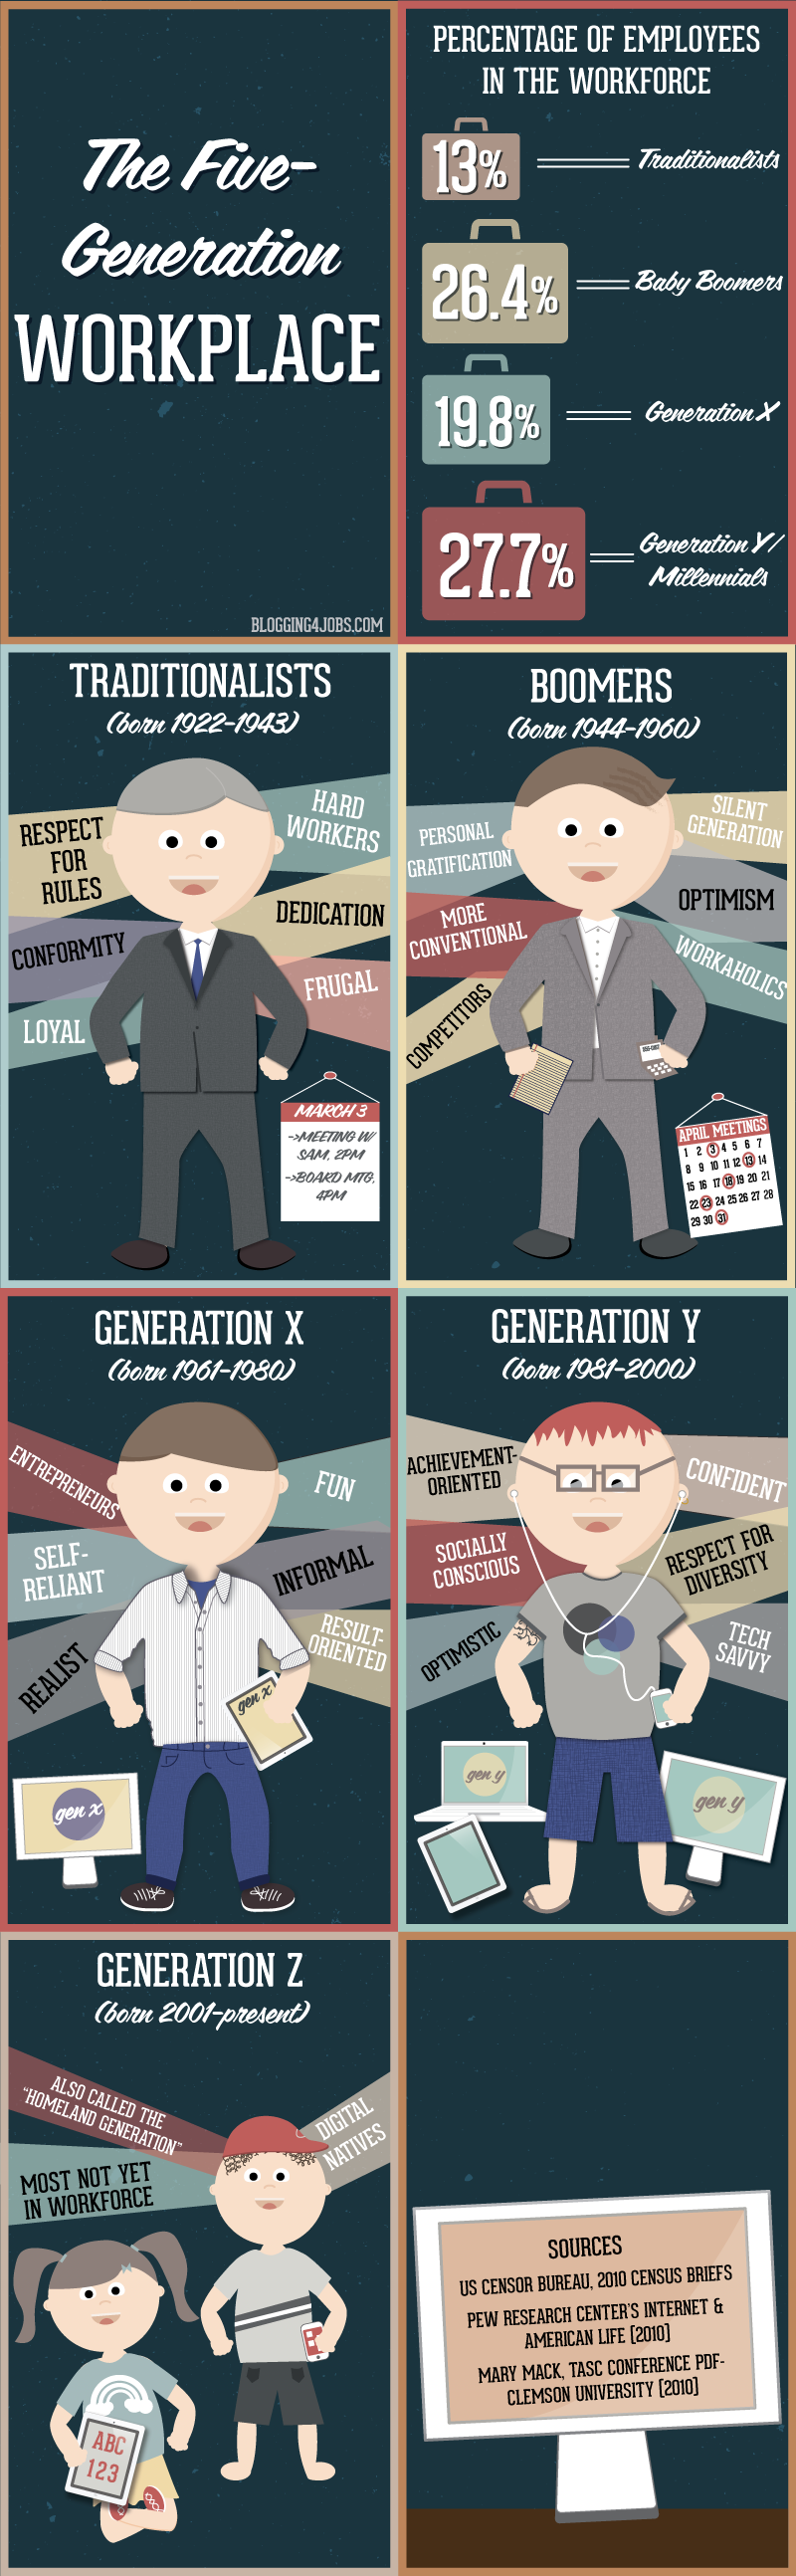 5 generaciones diferentes en el trabajo